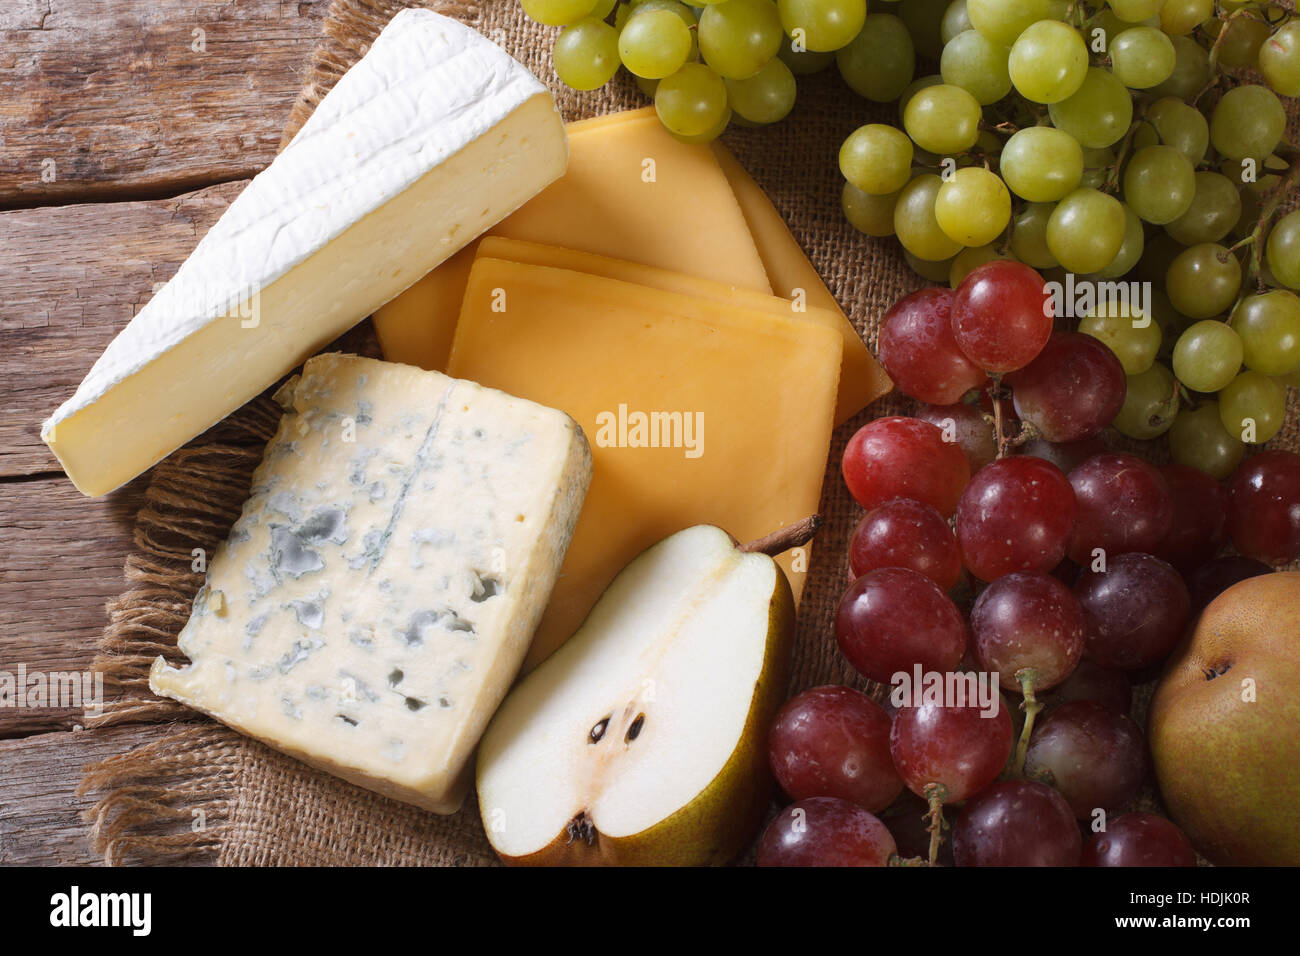 Le fromage et les fruits moulés sur la table horizontale vue du dessus. Banque D'Images